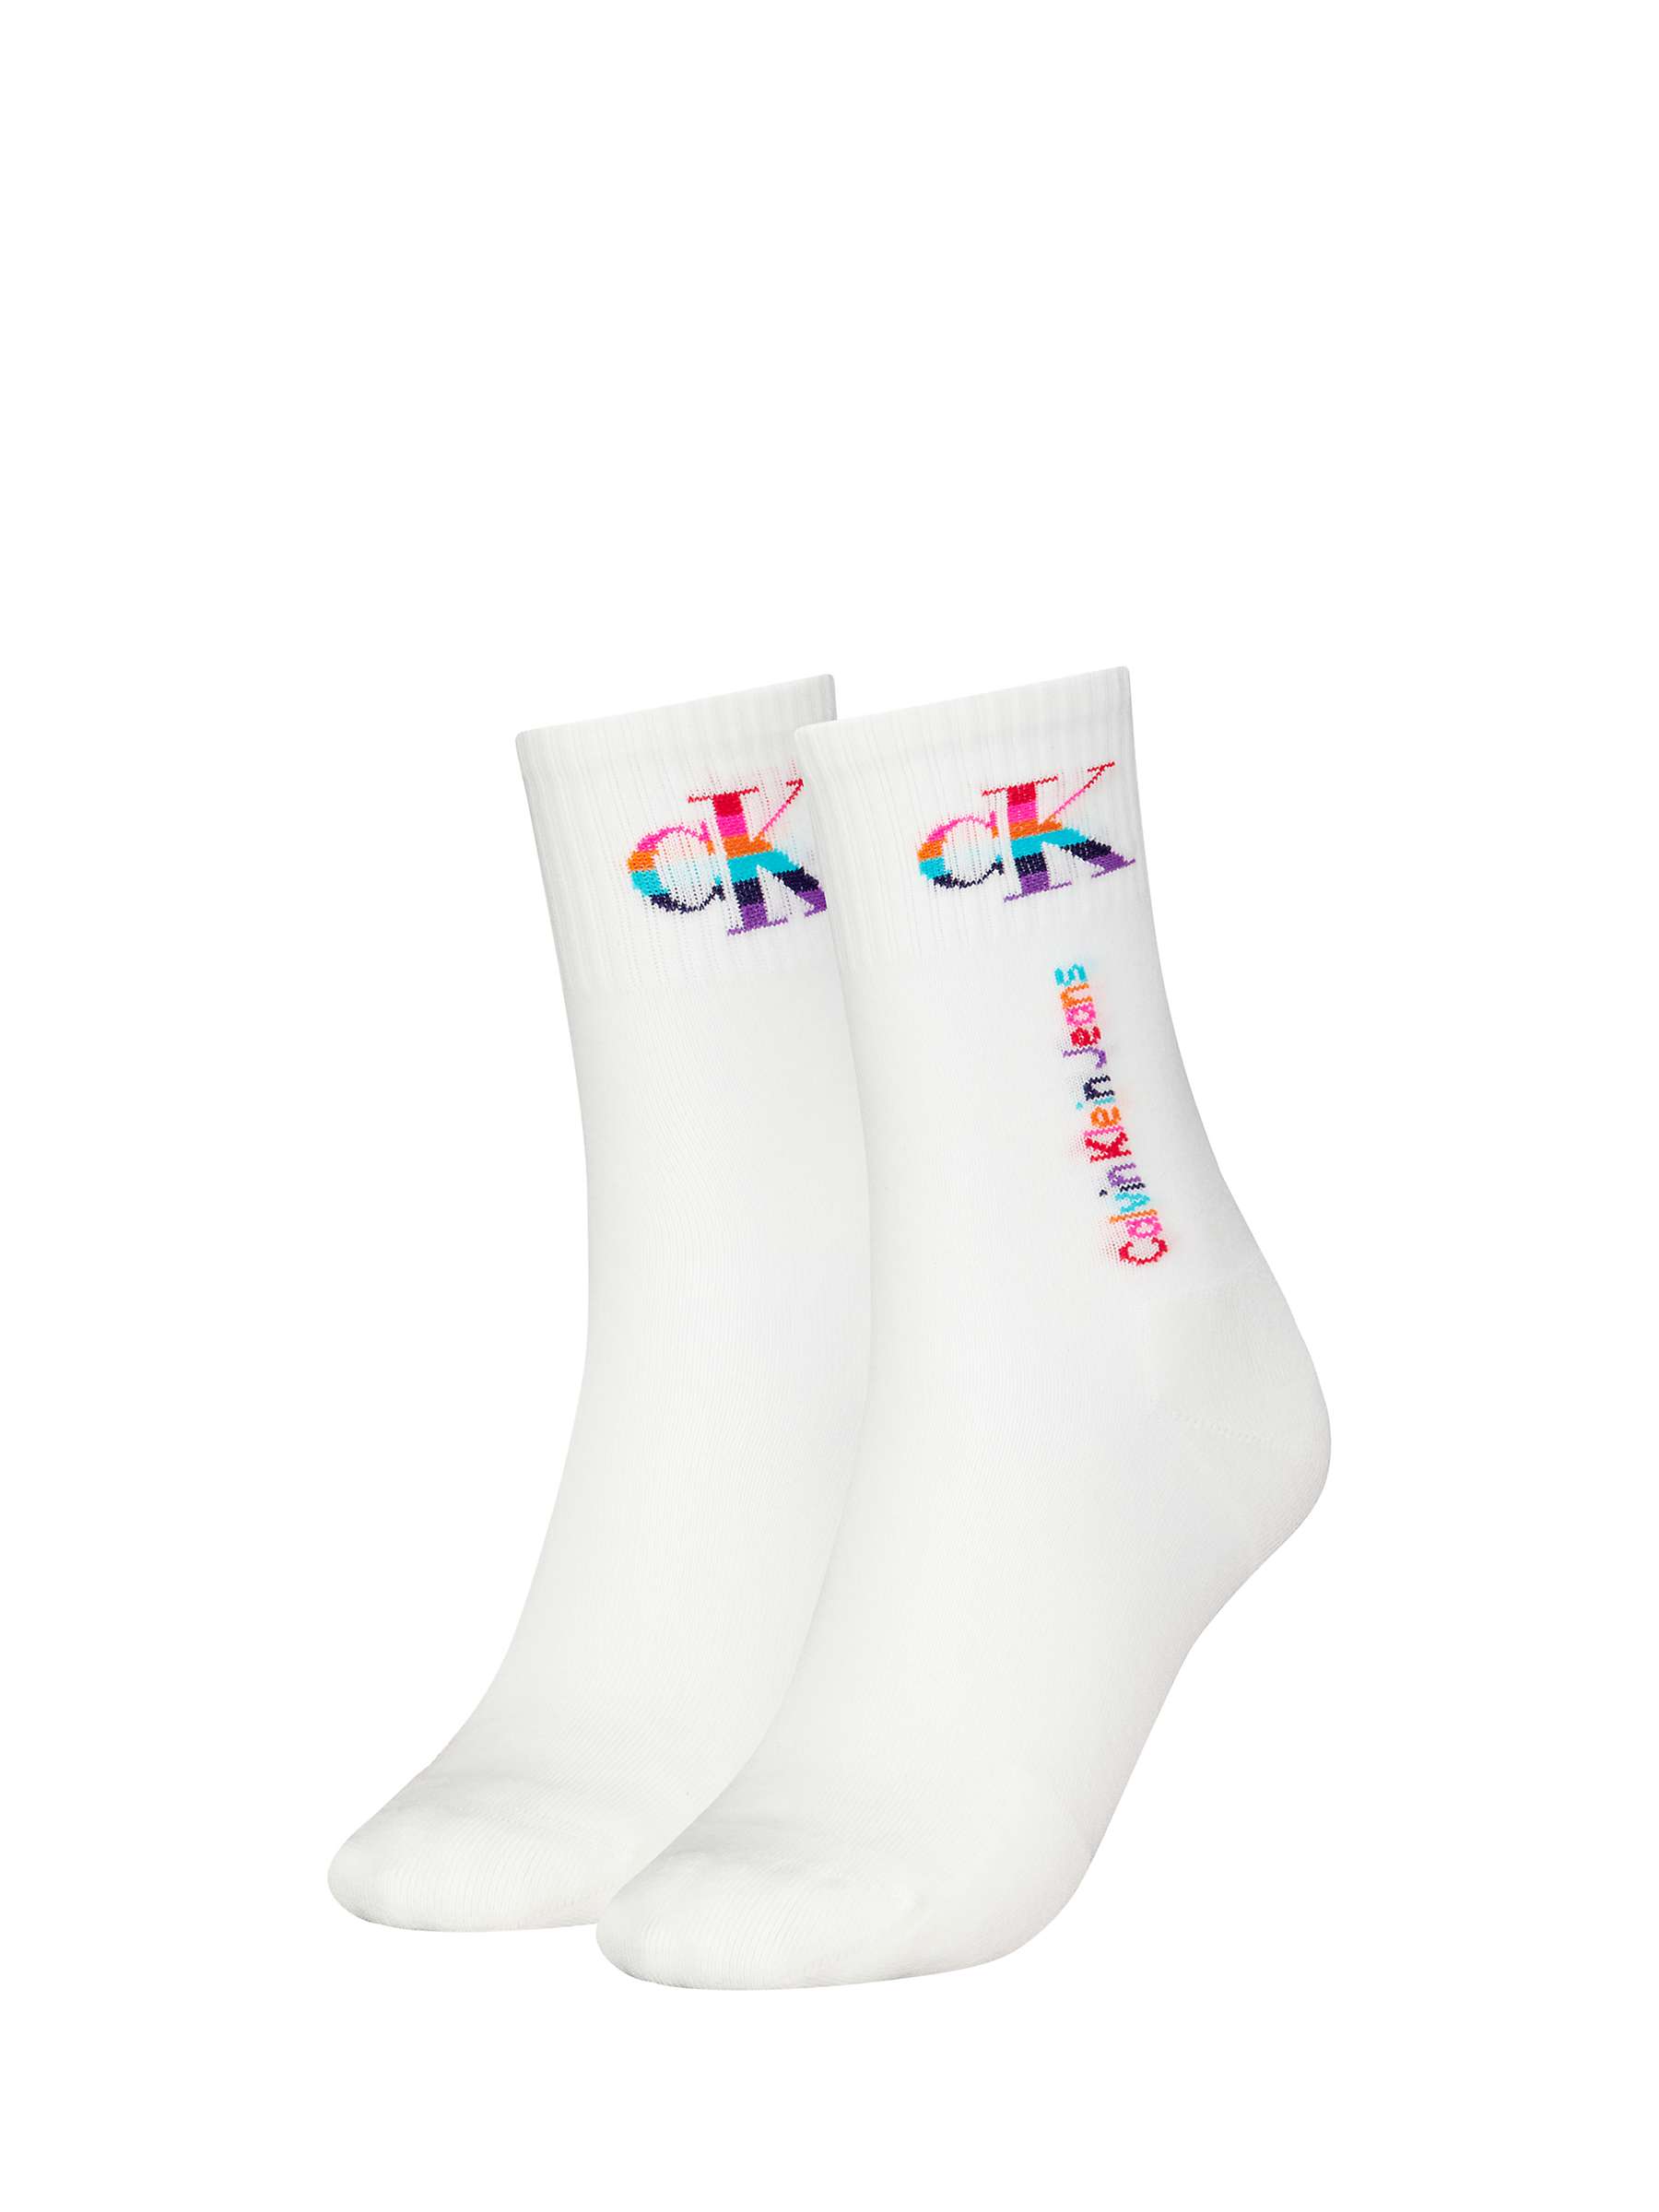 Buy Calvin Klein Pride Logo Socks, Pack of 2, White/Multi Online at johnlewis.com